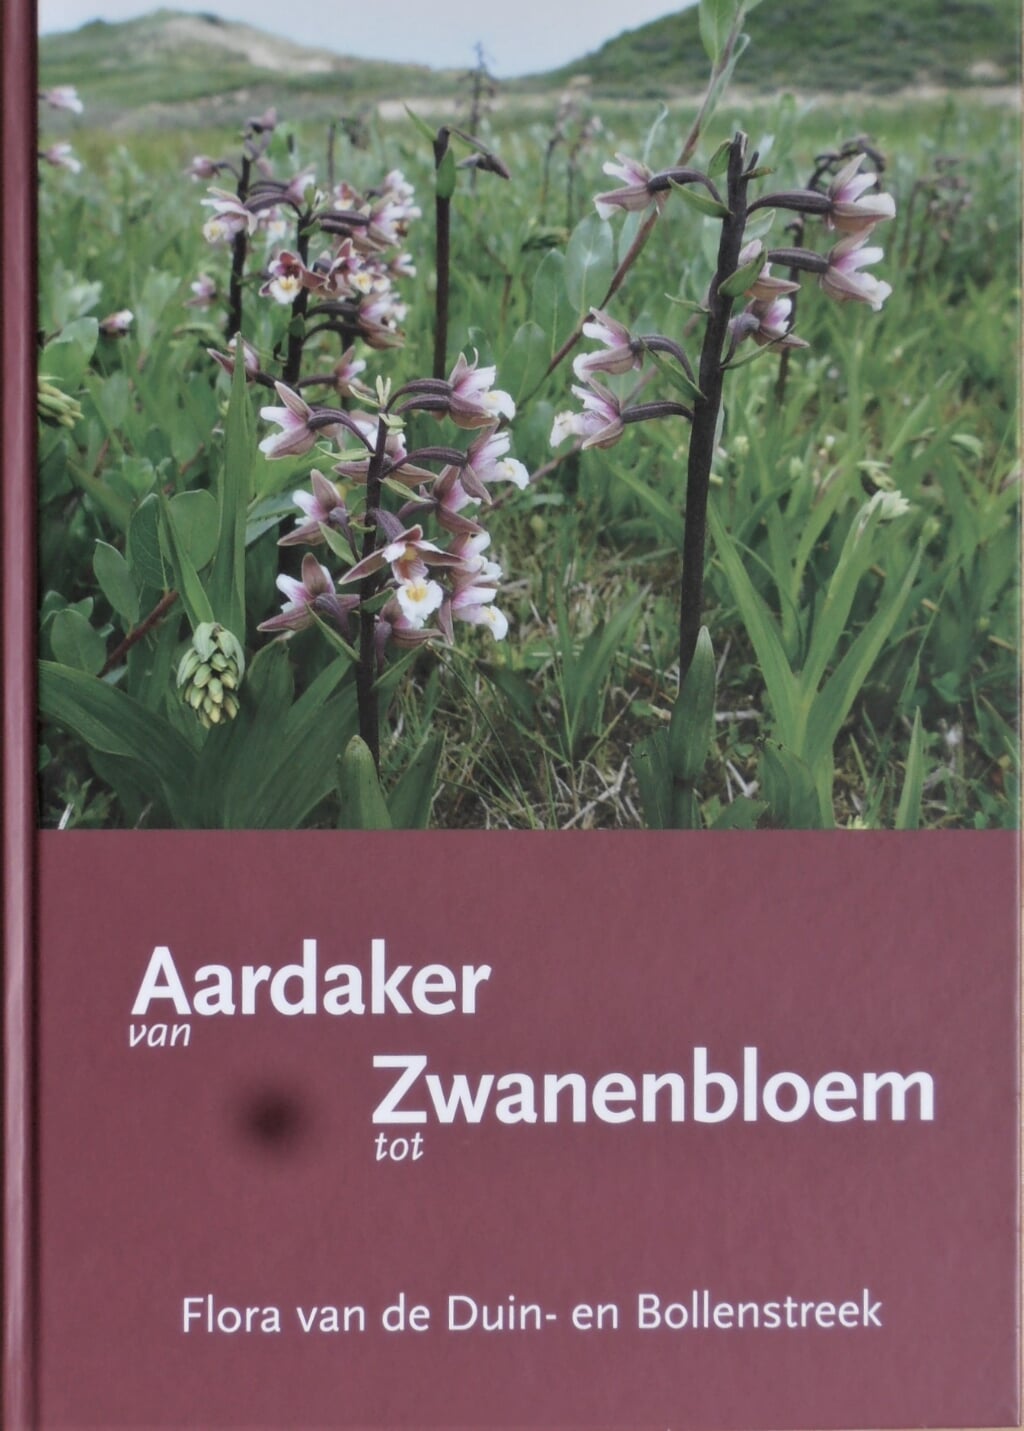 De kaft van het boek ‘Van Aardaker tot Zwanenbloem’ uit 2018 door Jelle van Dijk en Hans van Stijn.